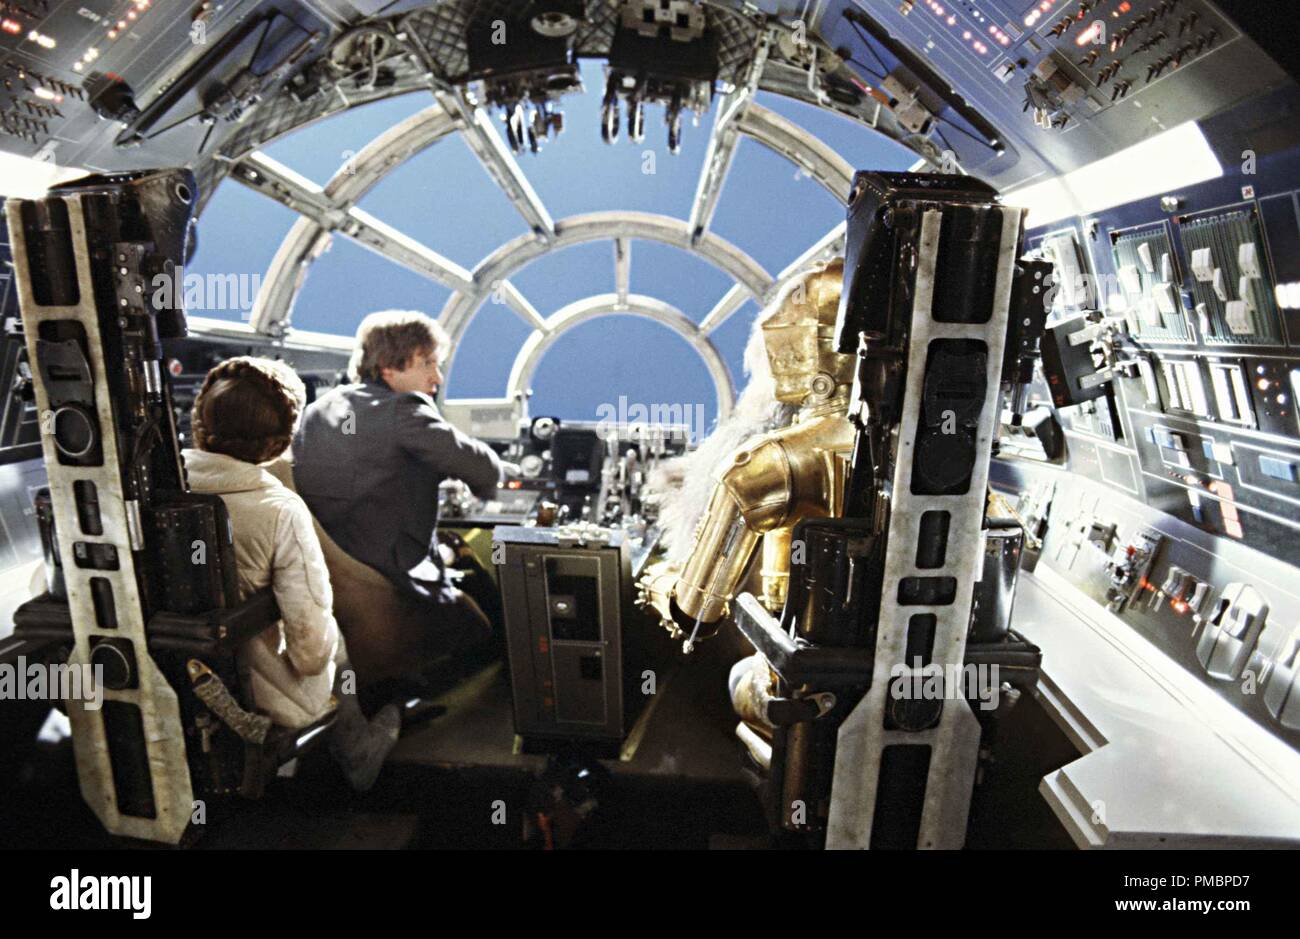 Der Innenraum des Millennium Falcon Cockpit in "Star Wars Episode V: Das  Imperium schlägt zurück" (1980) Datei Referenz # 32603 432 THA  Stockfotografie - Alamy